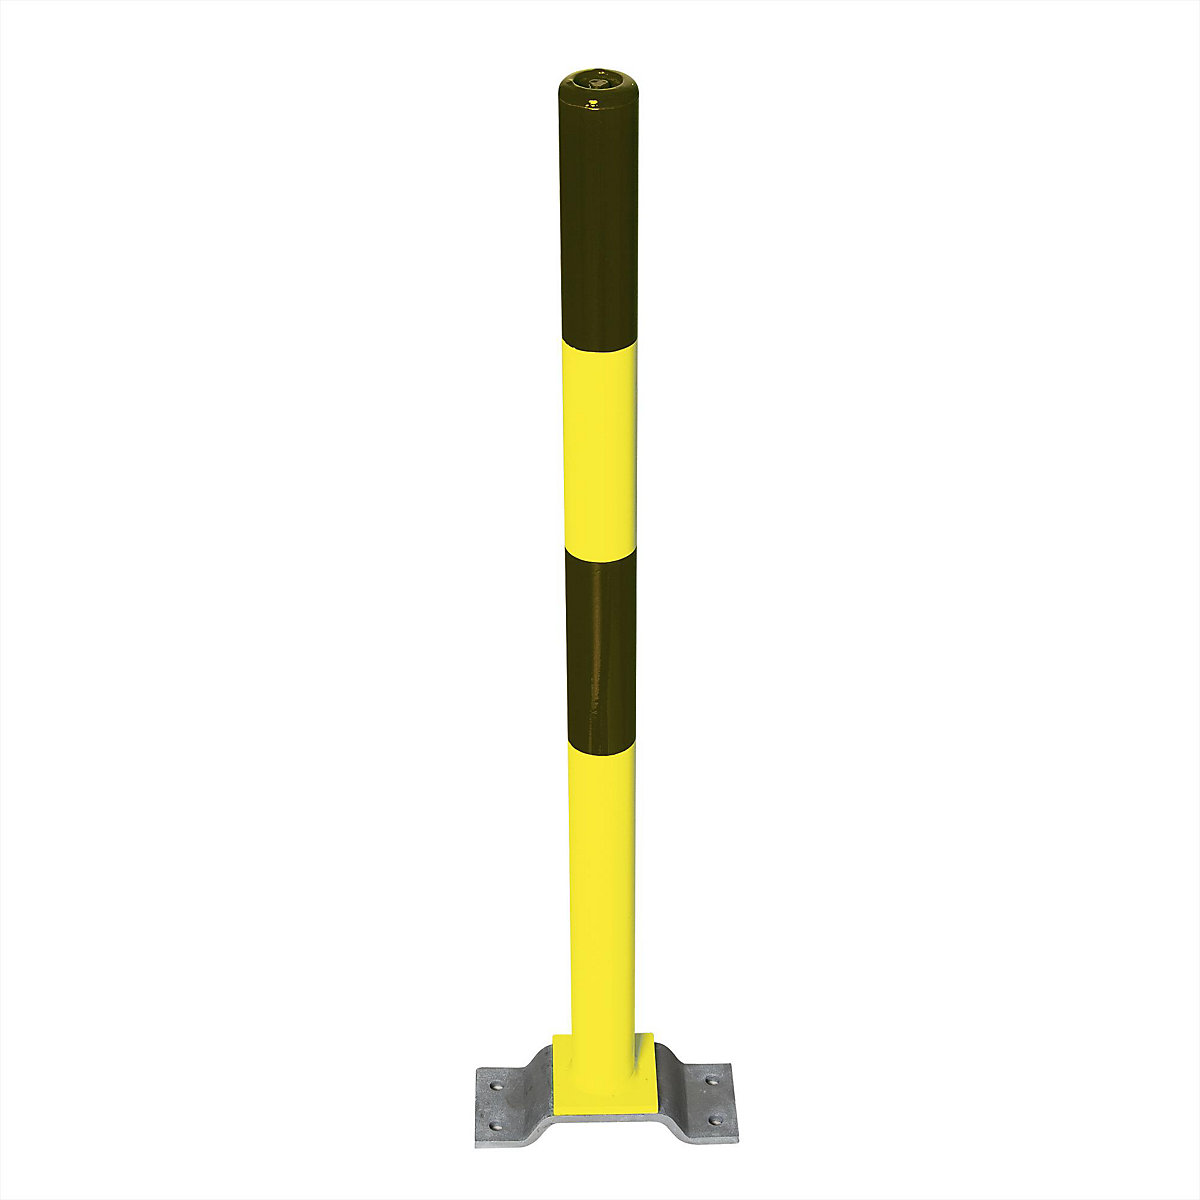 Čelični stup za ograđivanje, za pričvršćivanje tiplama, Ø 76 mm, u crno-žutoj boji, 2 ušice lanaca-6